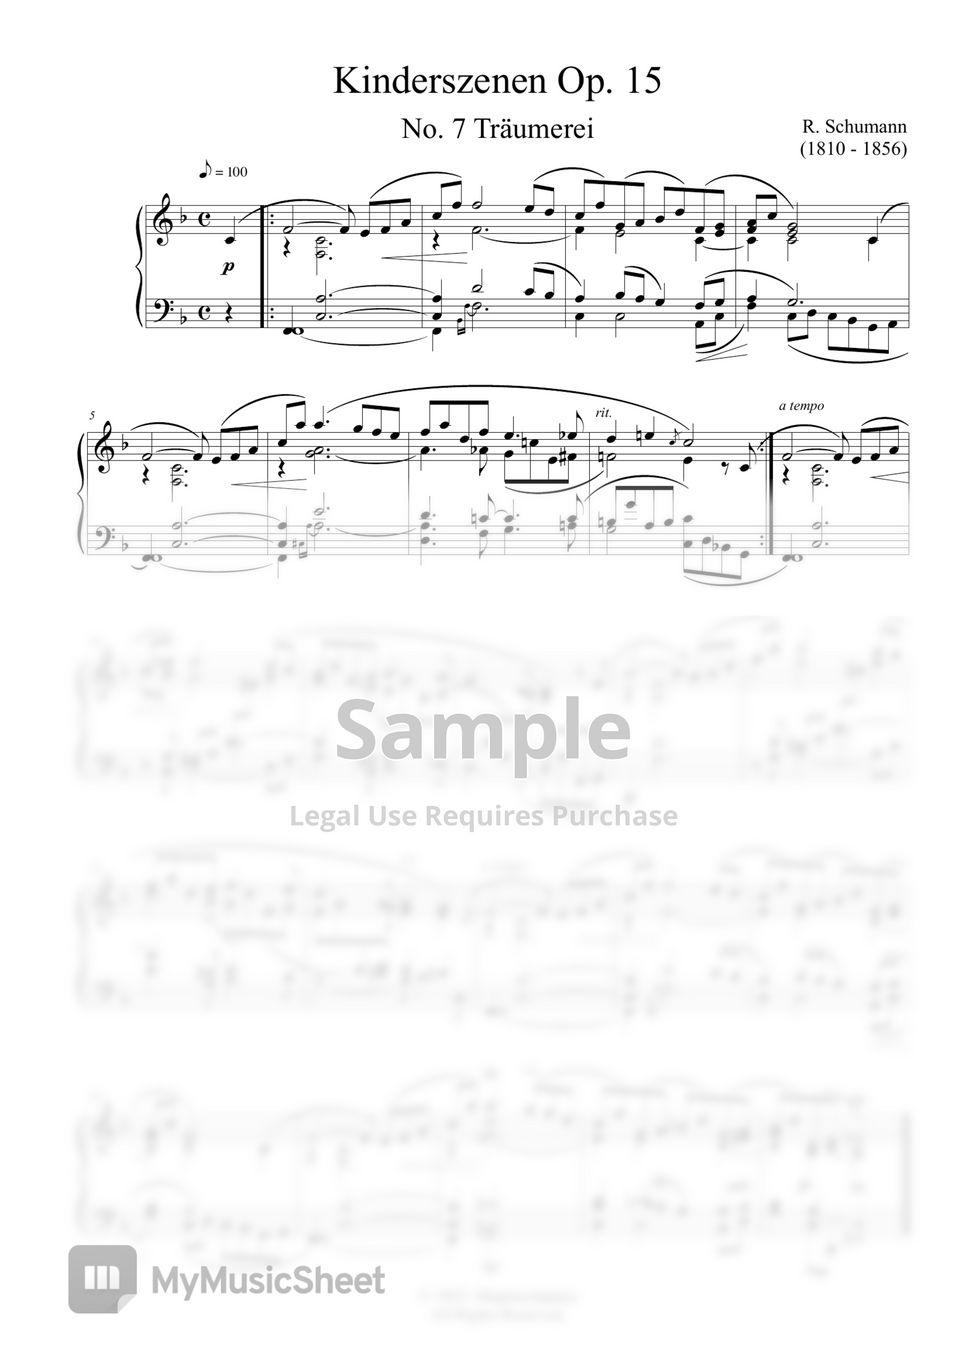 R. Schumann - Schumann Kinderszenen Op. 15 by MyMusicSheet Official